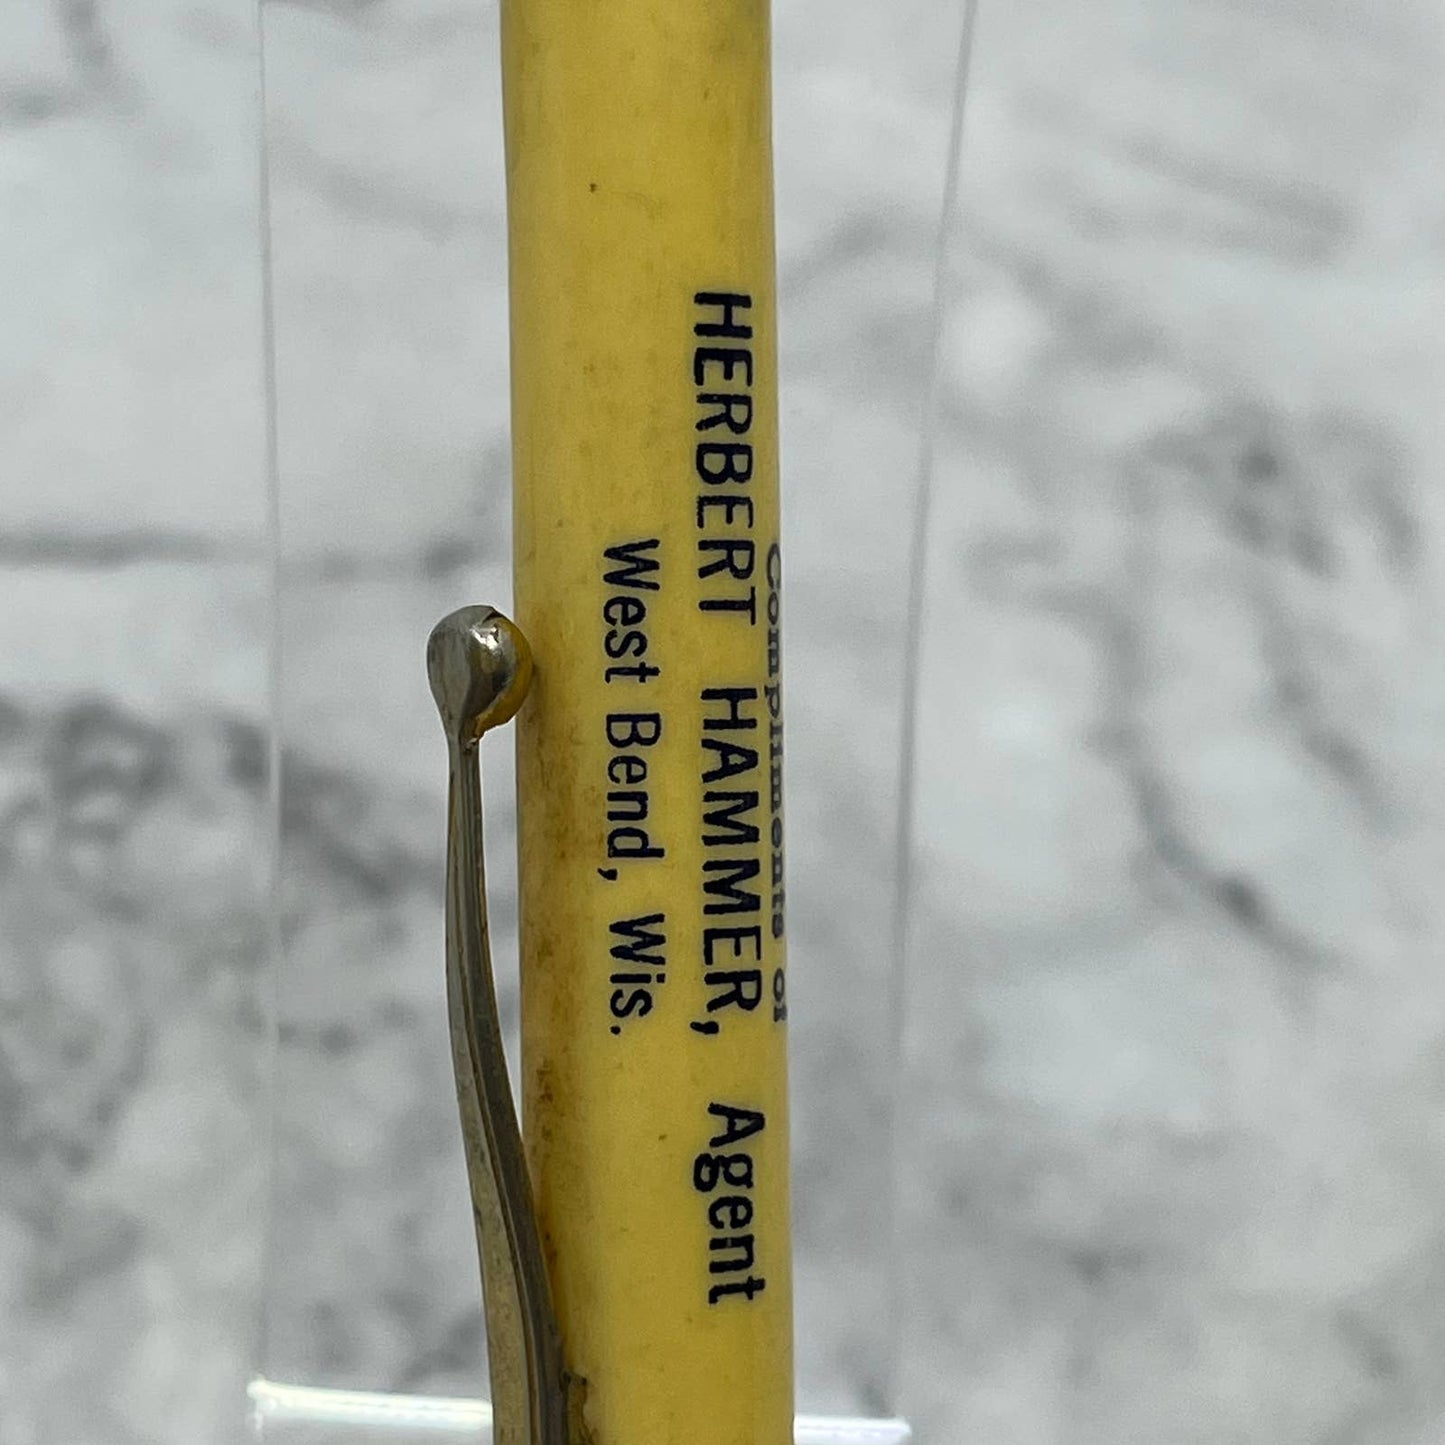 Vintage Mechanical Pencil FLOATER Standard Oil Herbert Hammer West Bend WI SE7